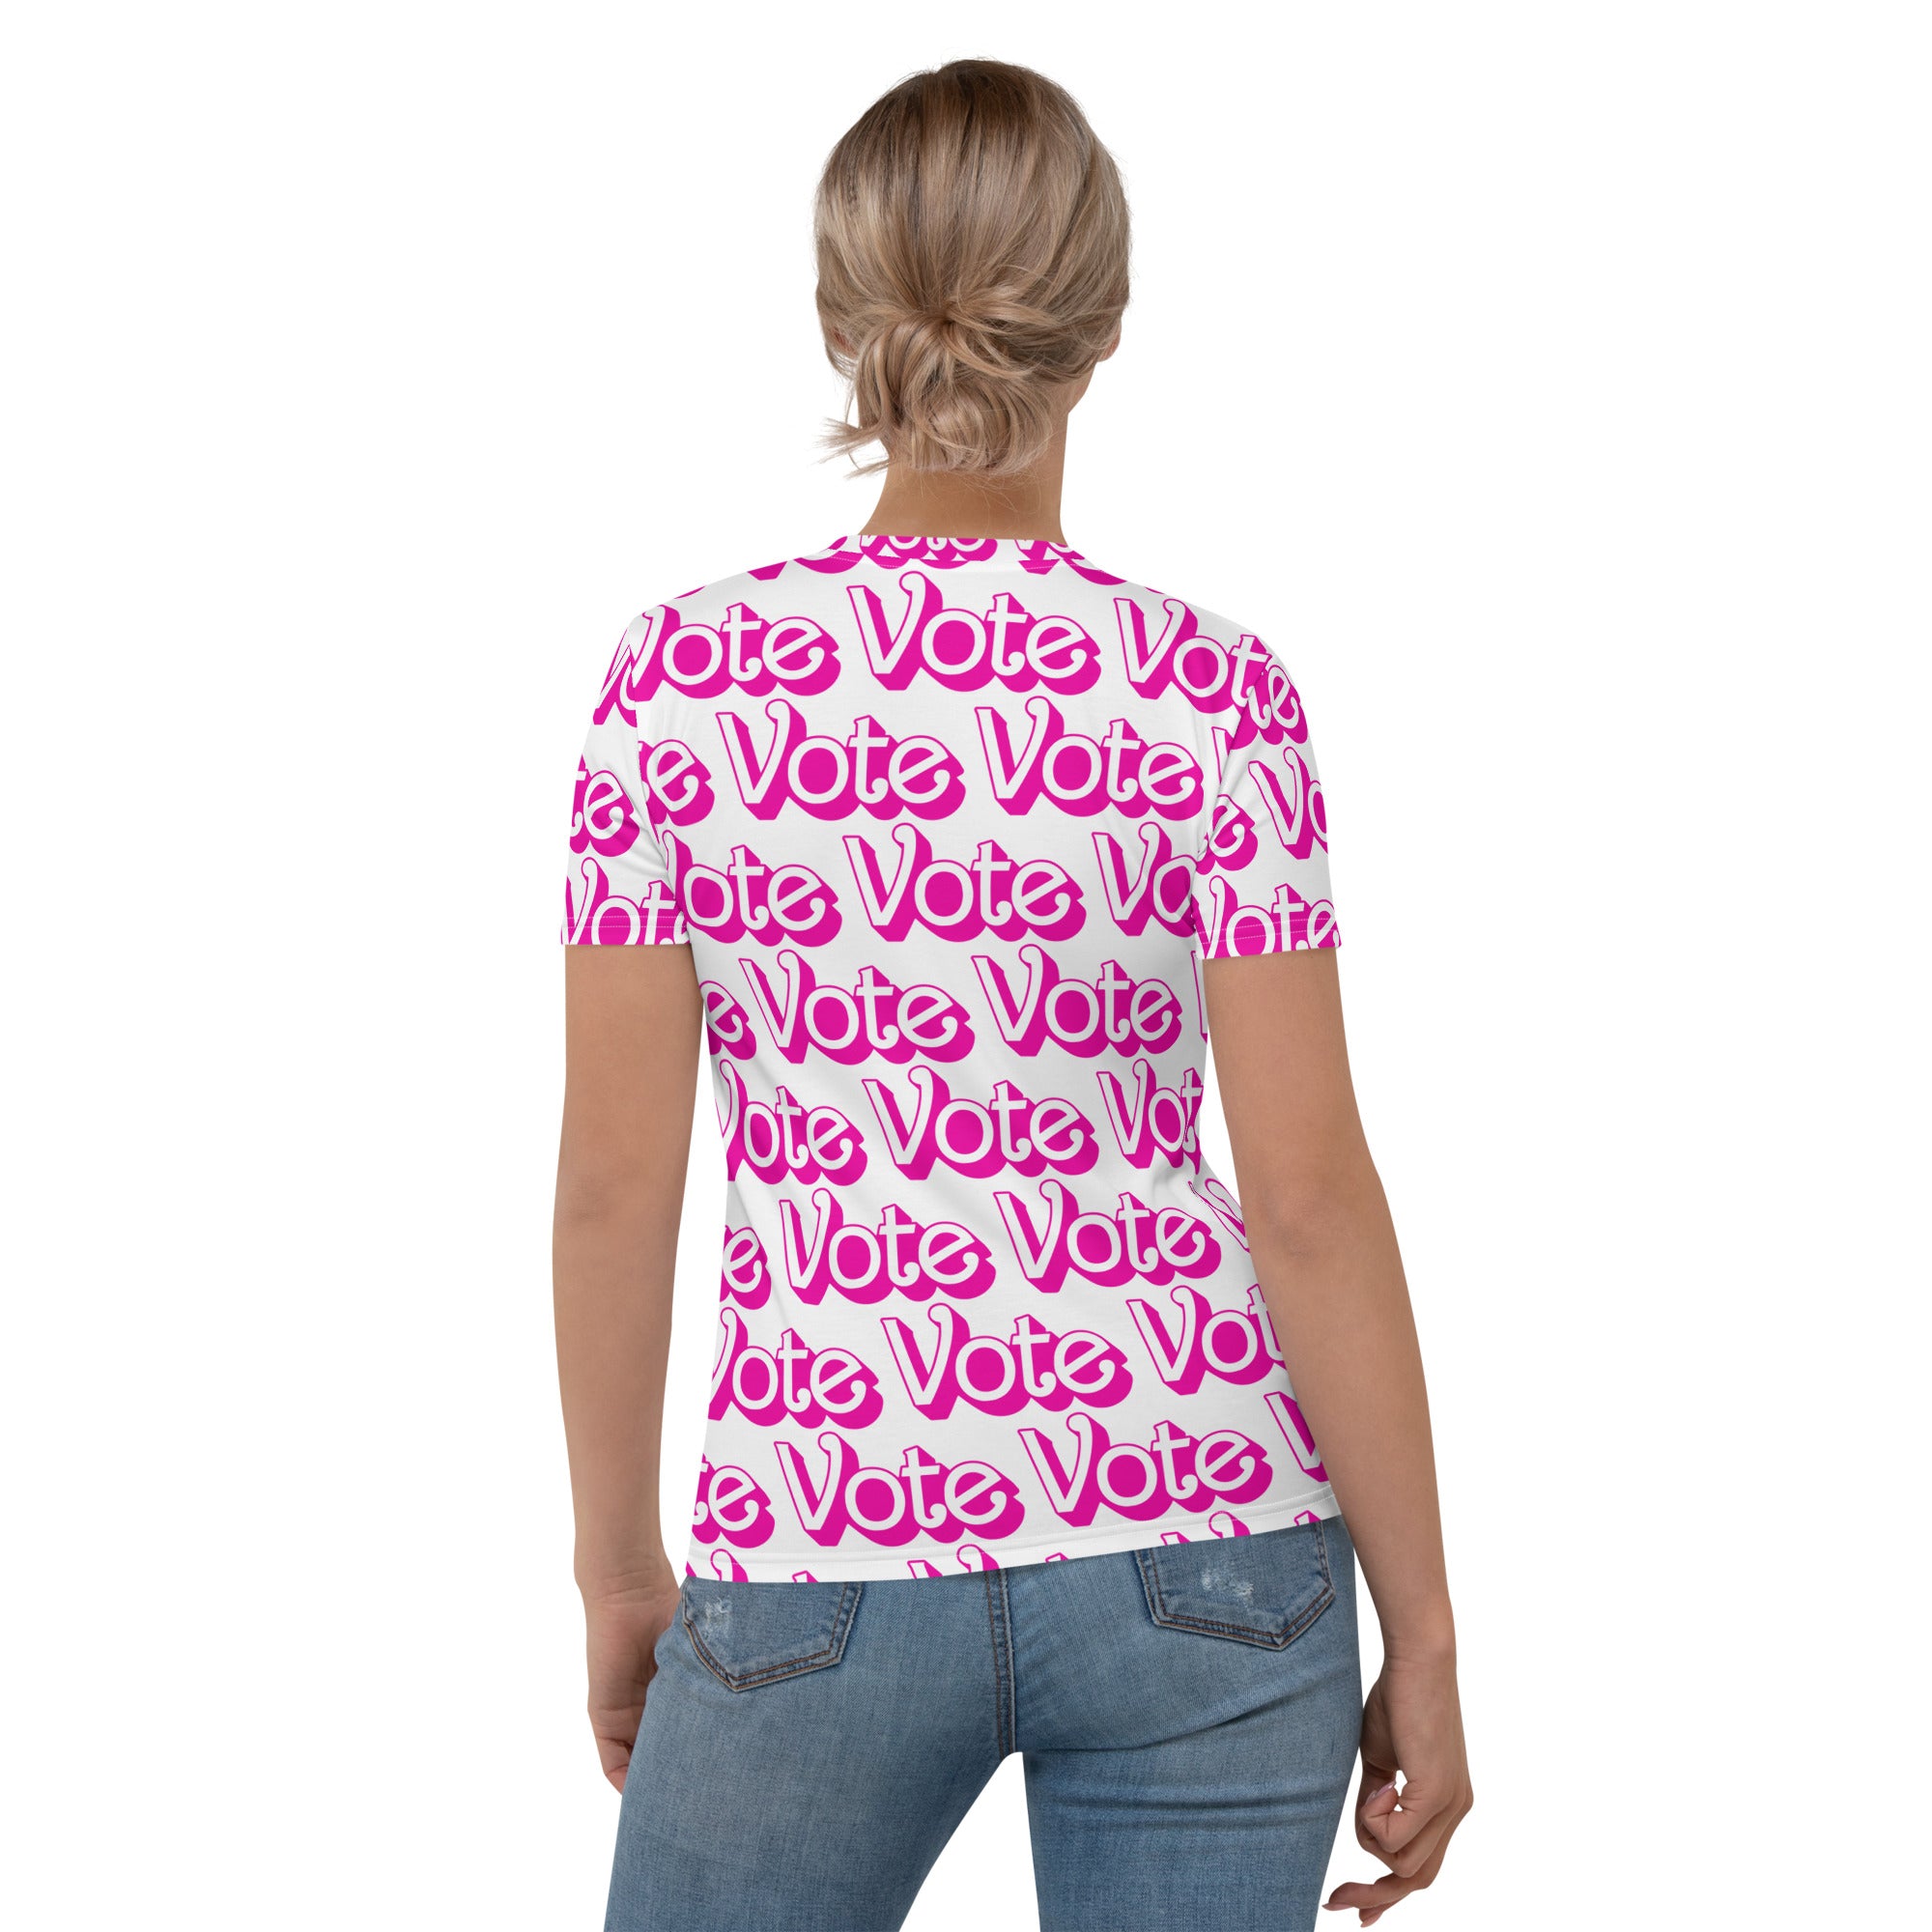 Vote (Vote Vote Vote) Pink - Women's T-shirt